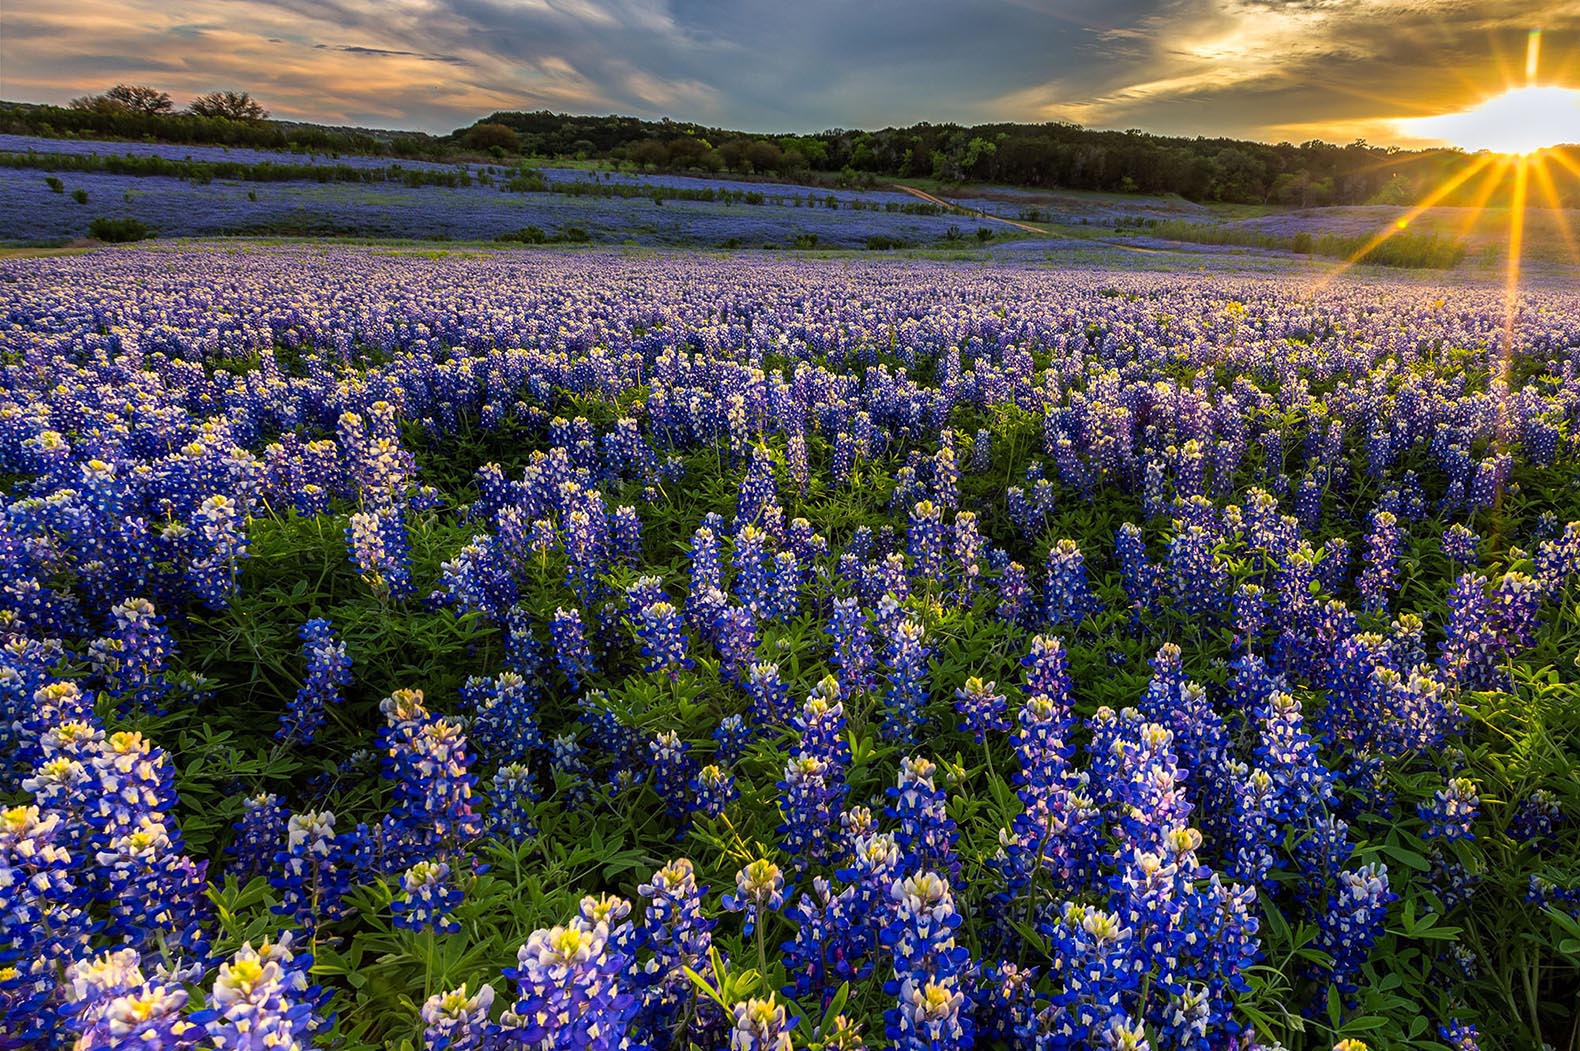 Field of Blue Bonnet flowers